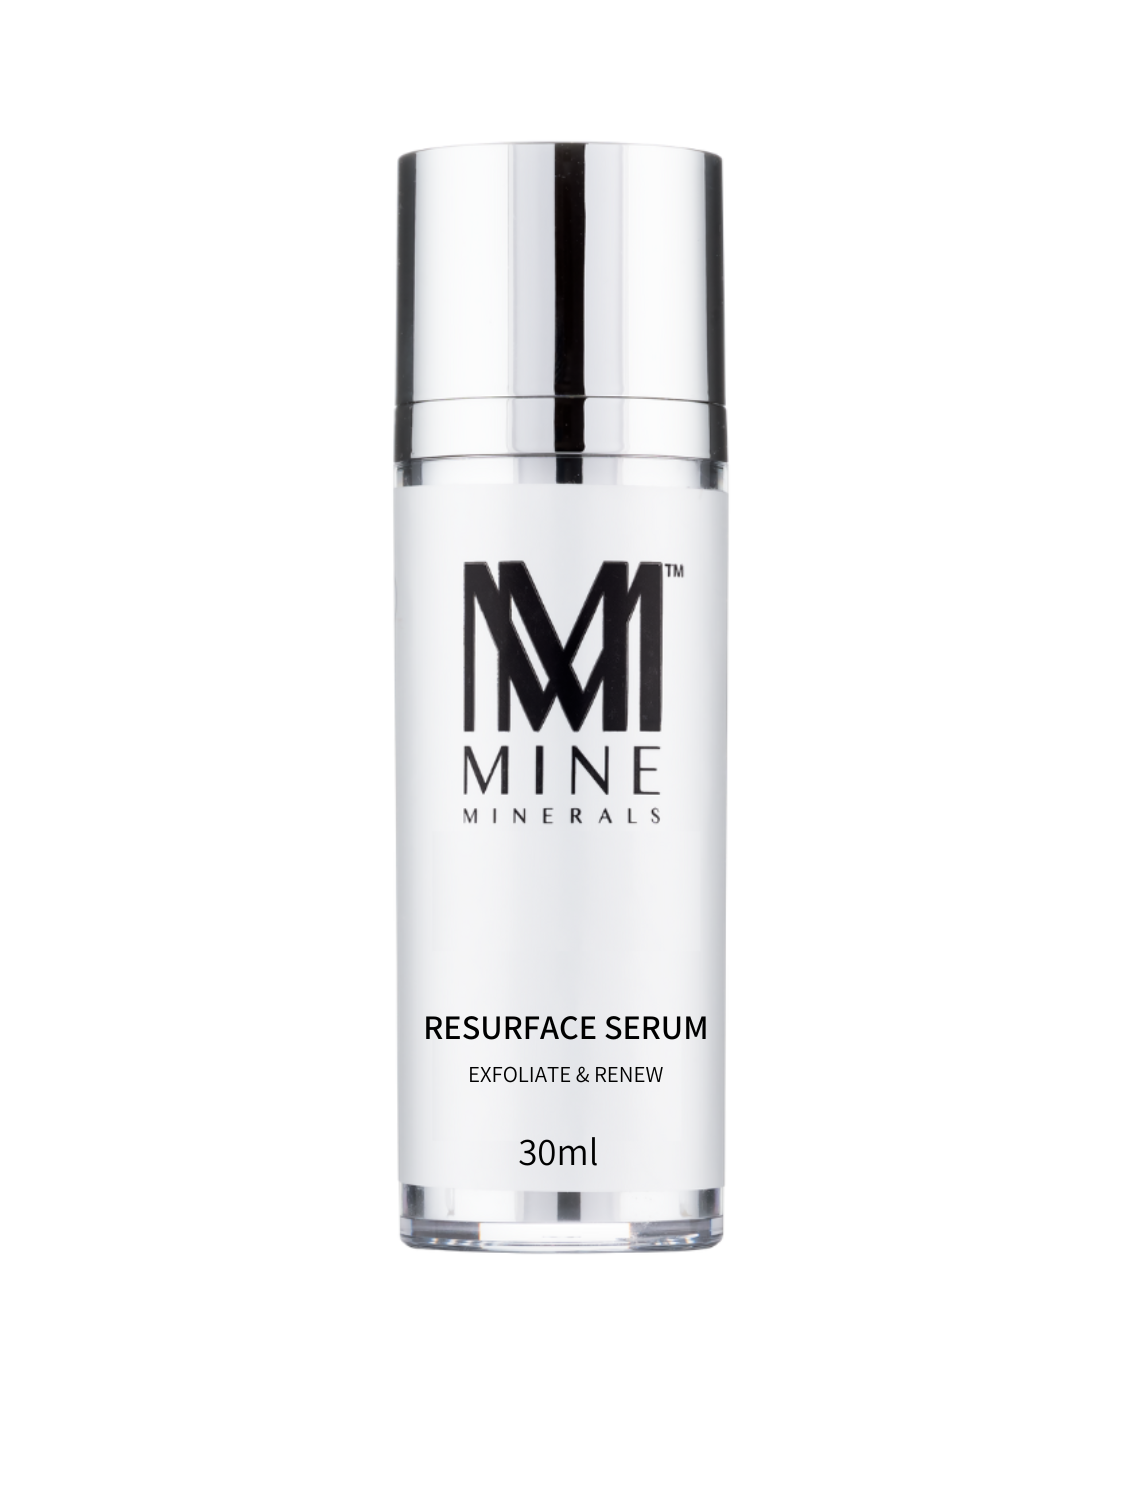 Resurface Serum - 30ml - Mine Minerals